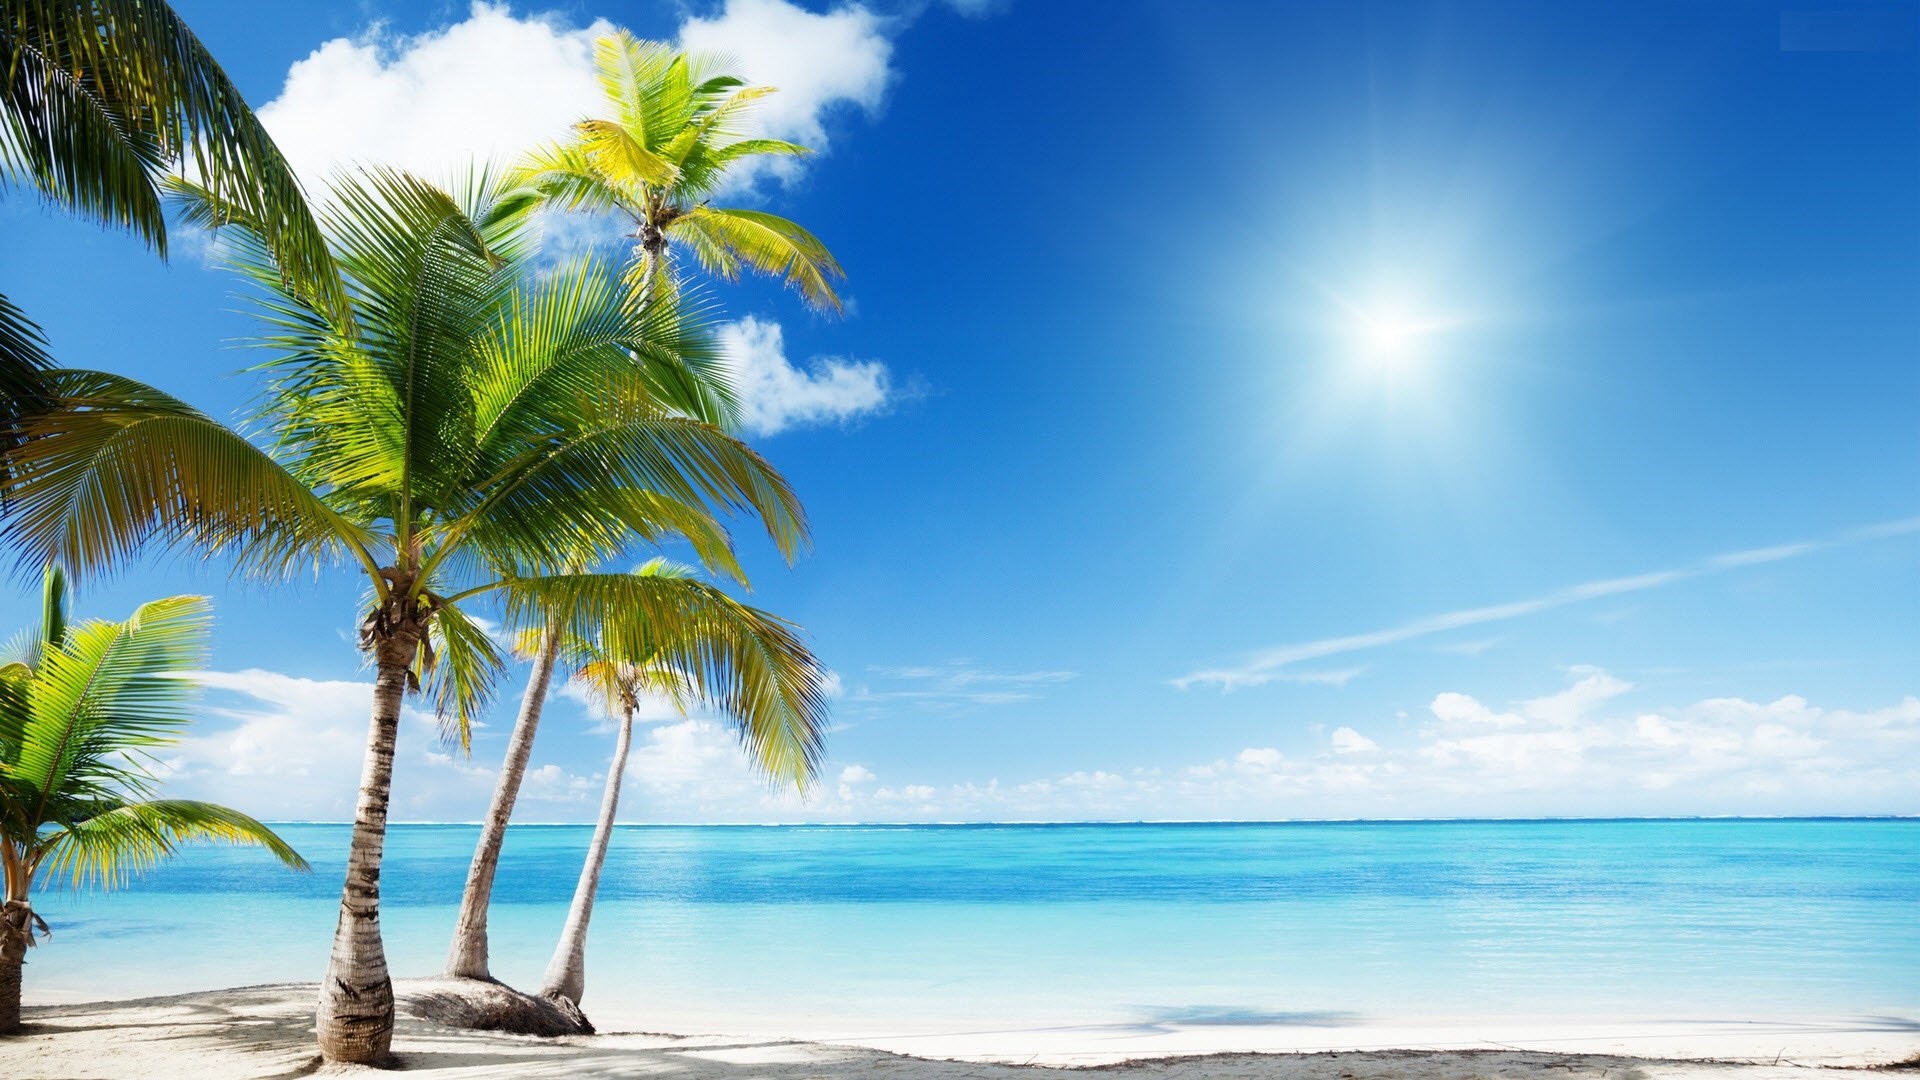 Sunny Tropical Beach Wallpaper Photos For Desktop